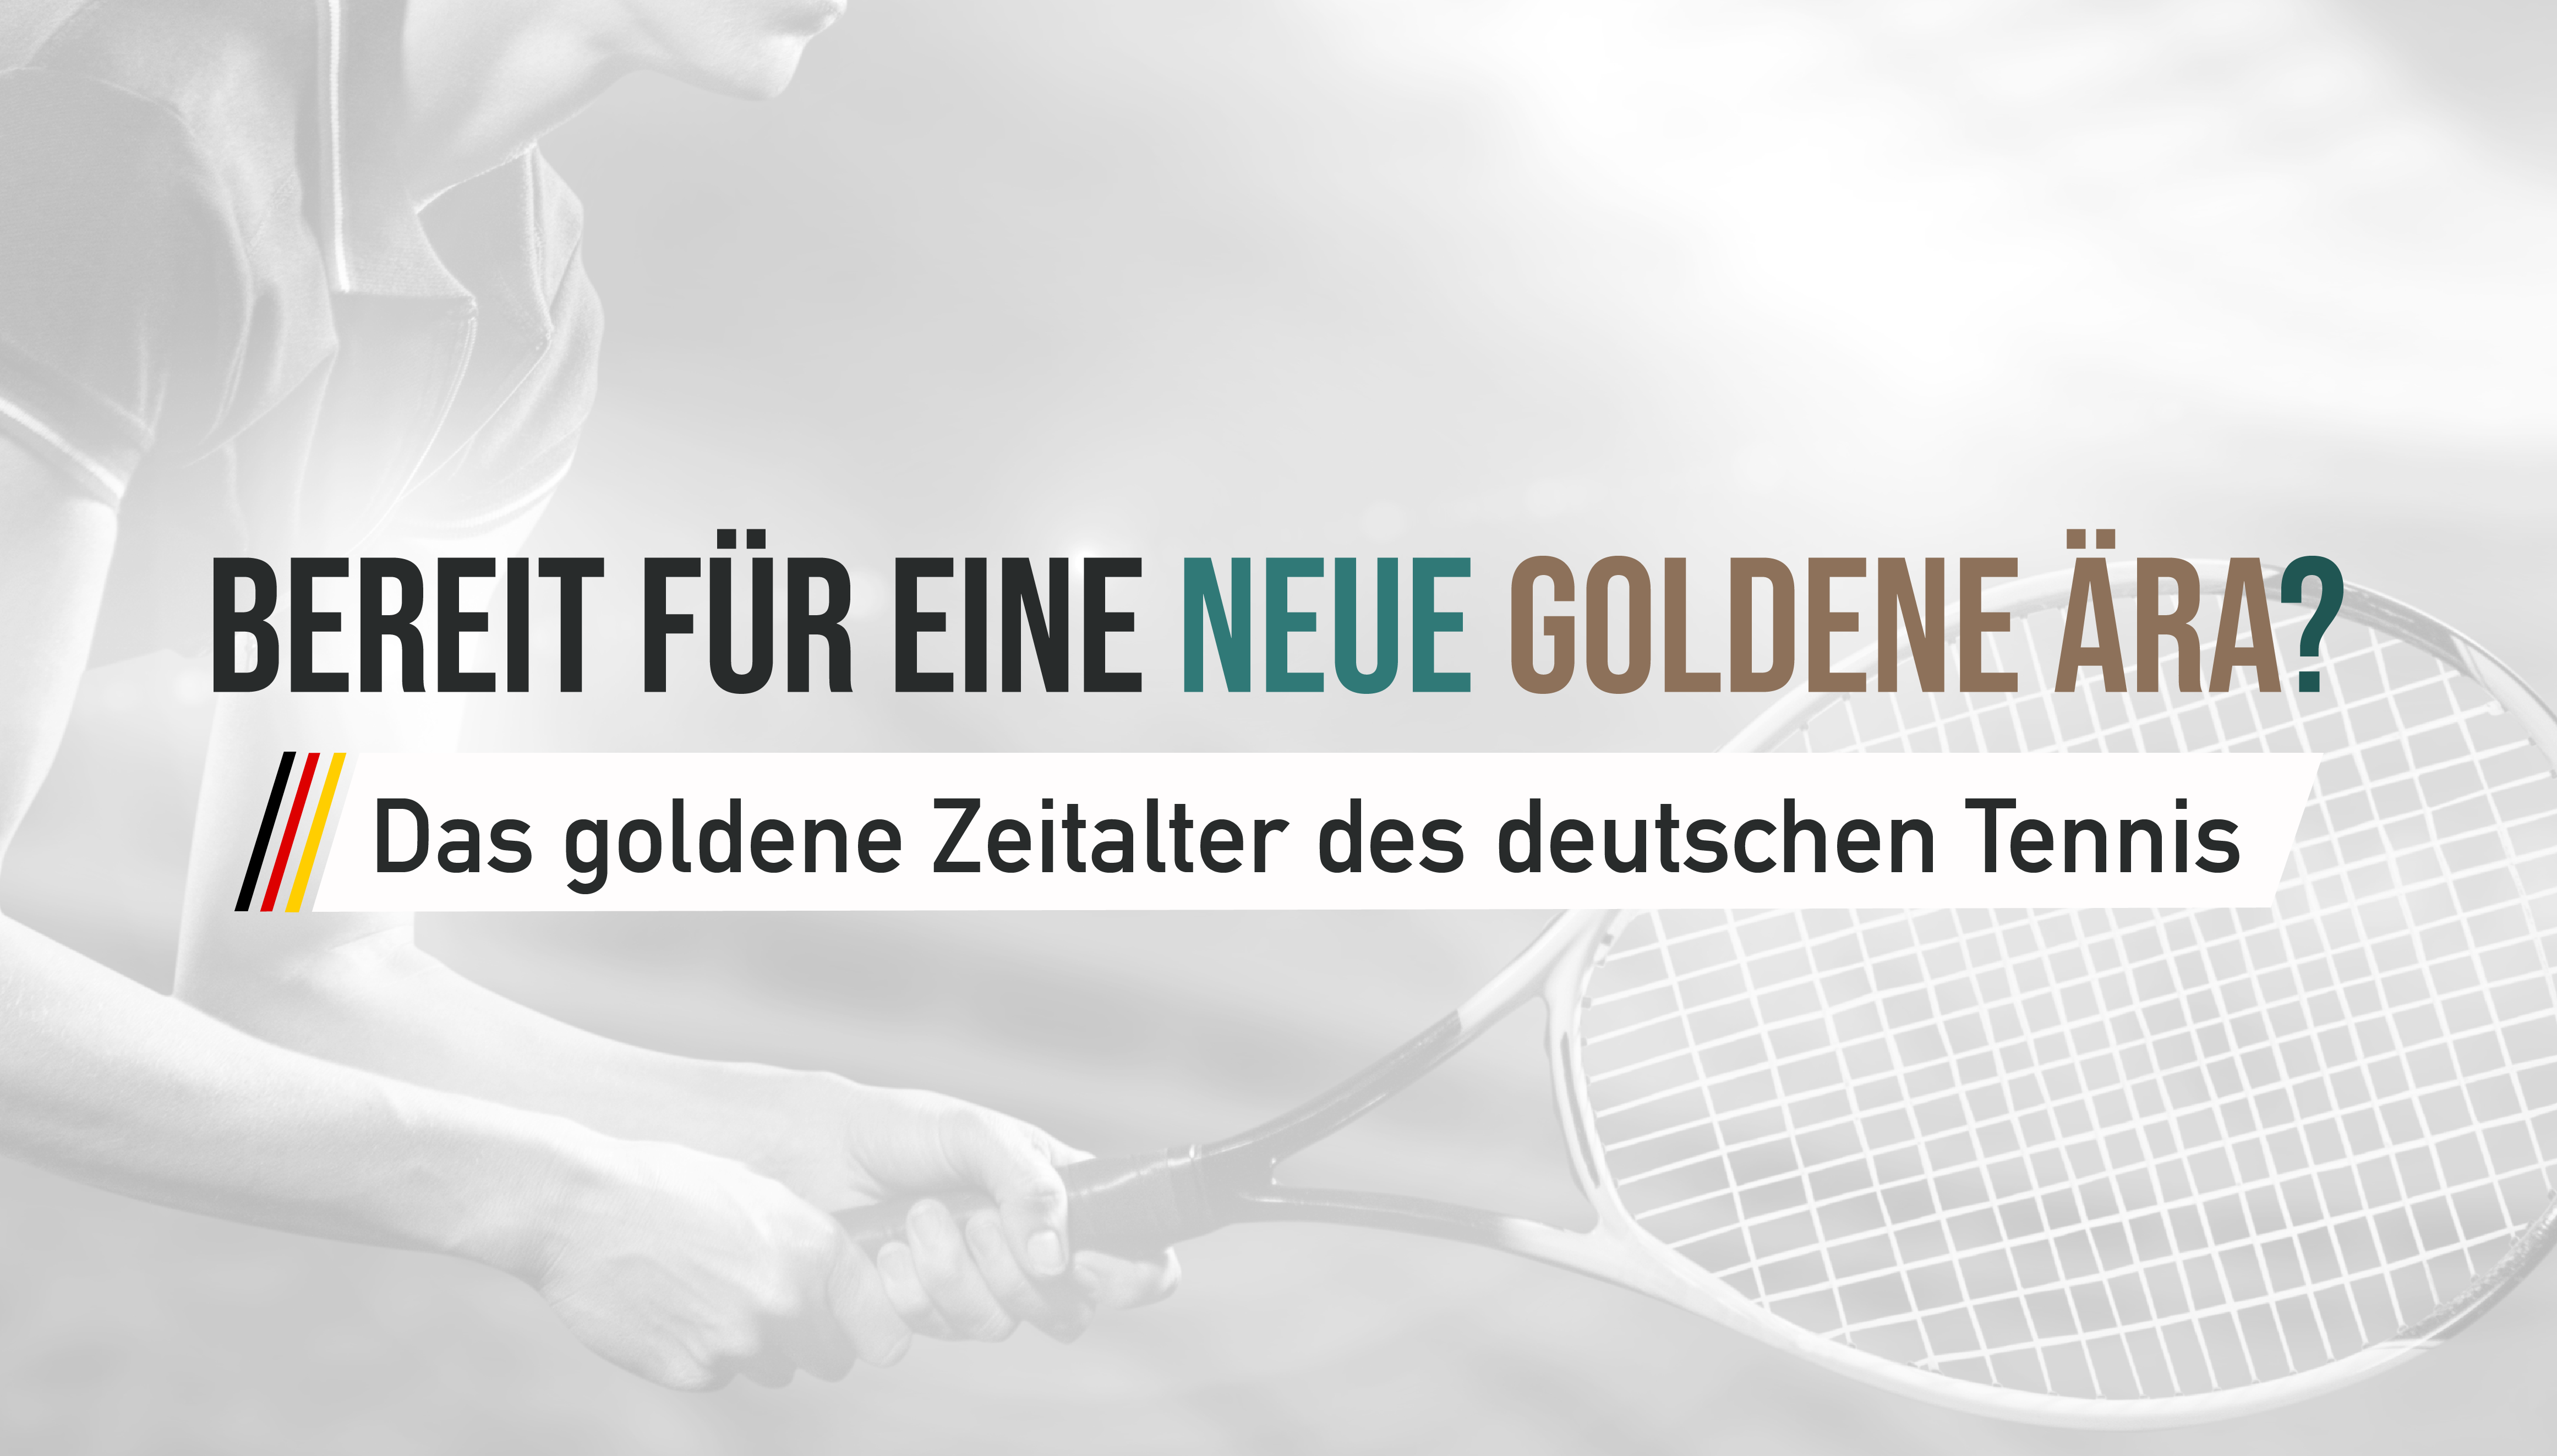 kann die nachste generation an das goldene zeitalter des deutschen tennis anknupfen